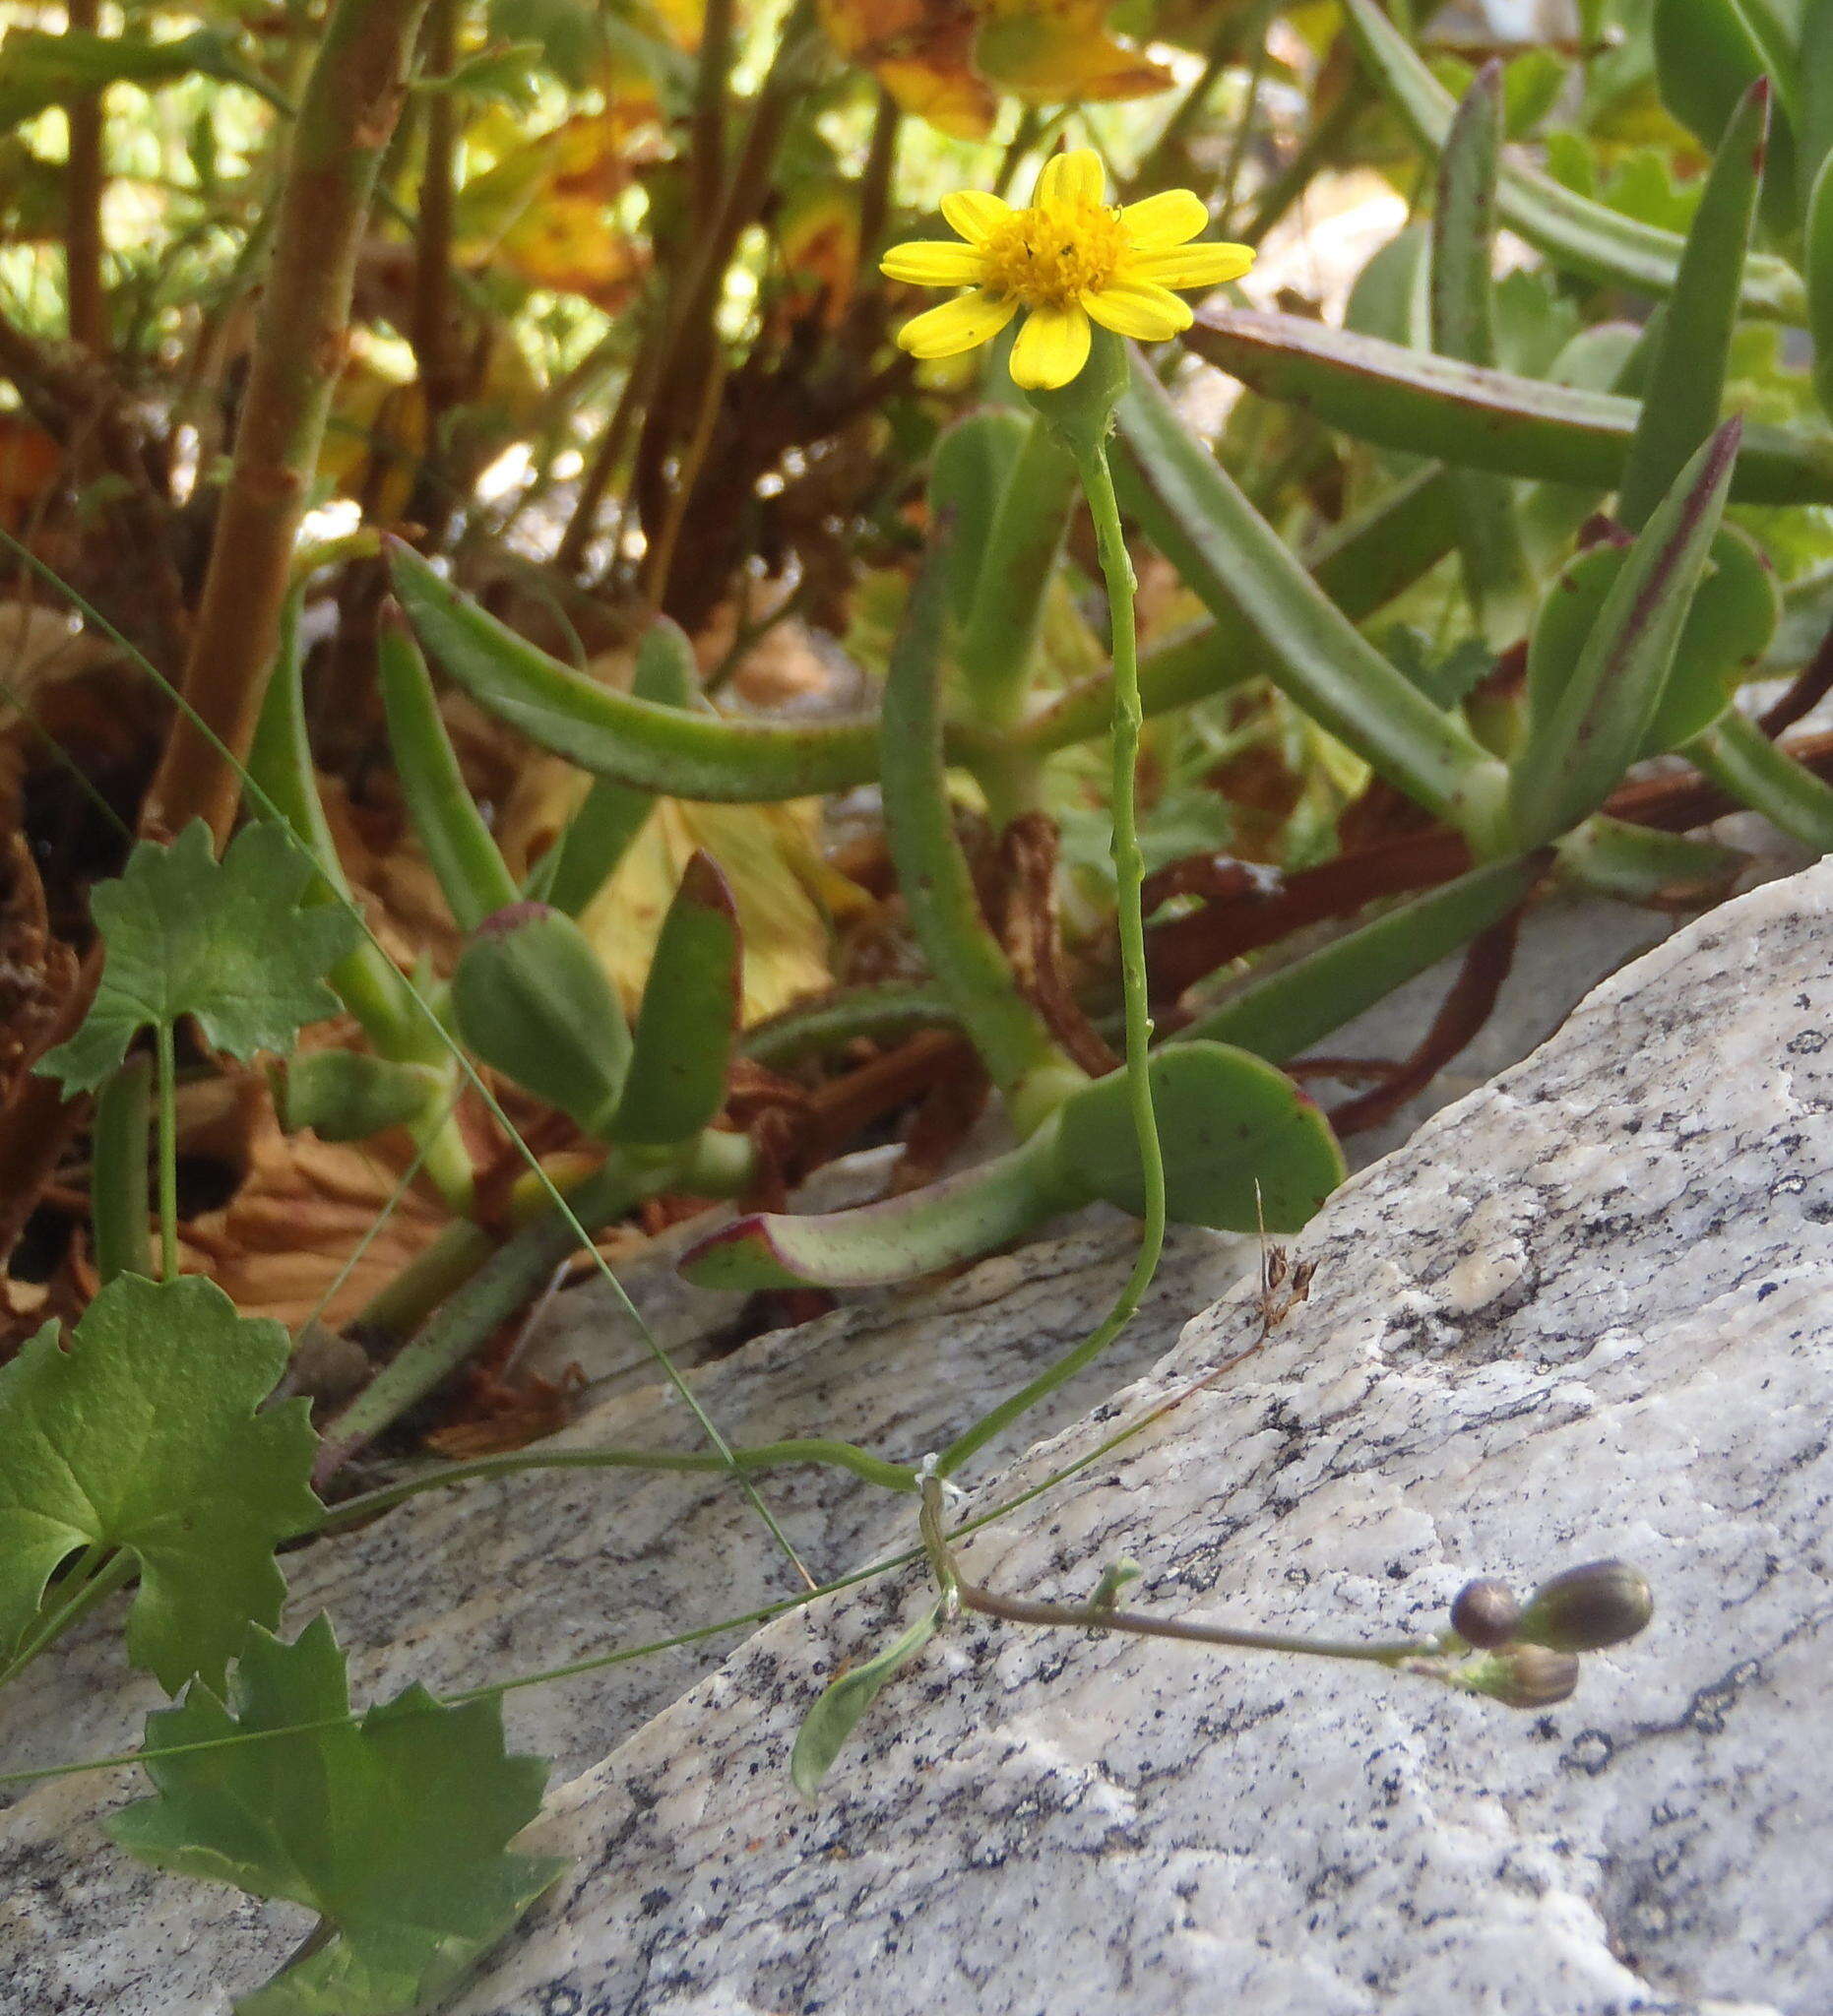 Image of Cineraria lobata subsp. lobata